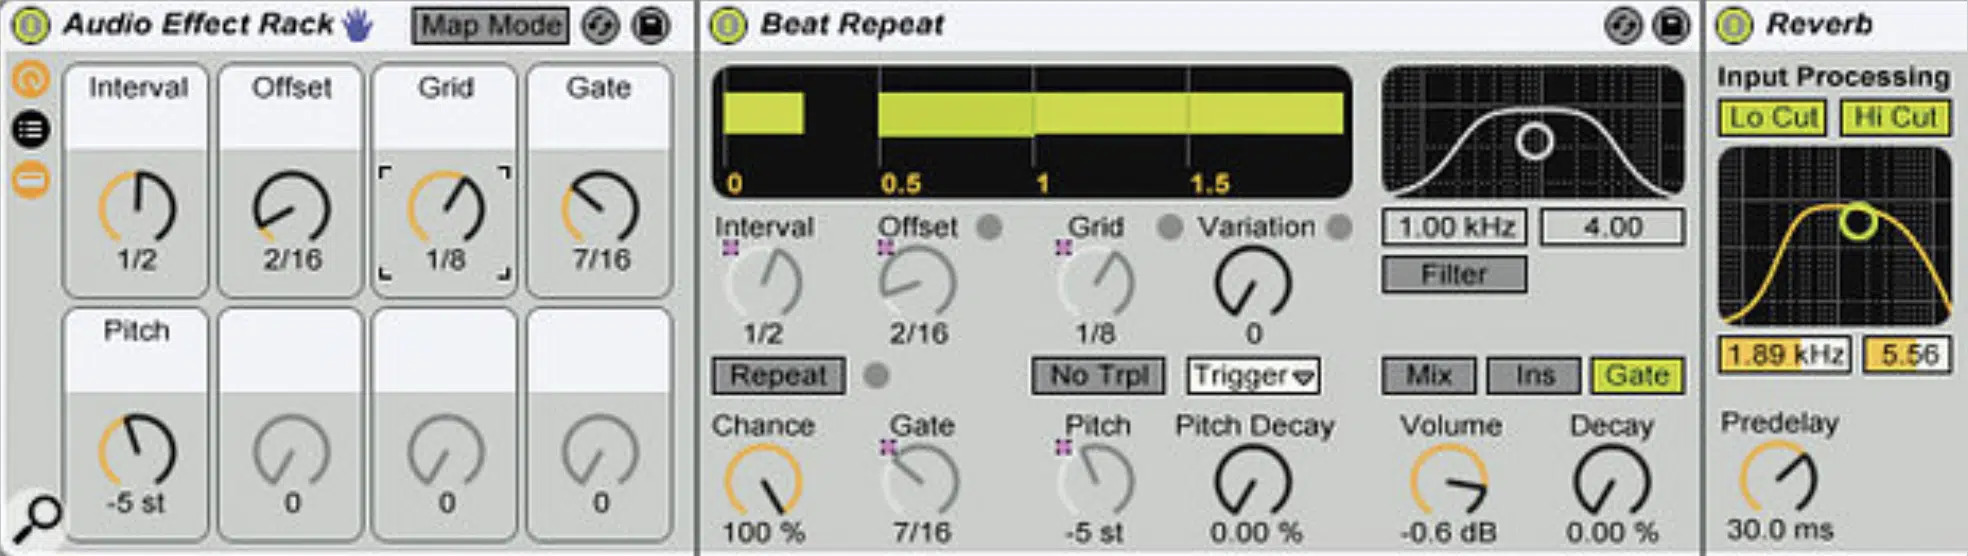 Beat Repeat 3 - Unison